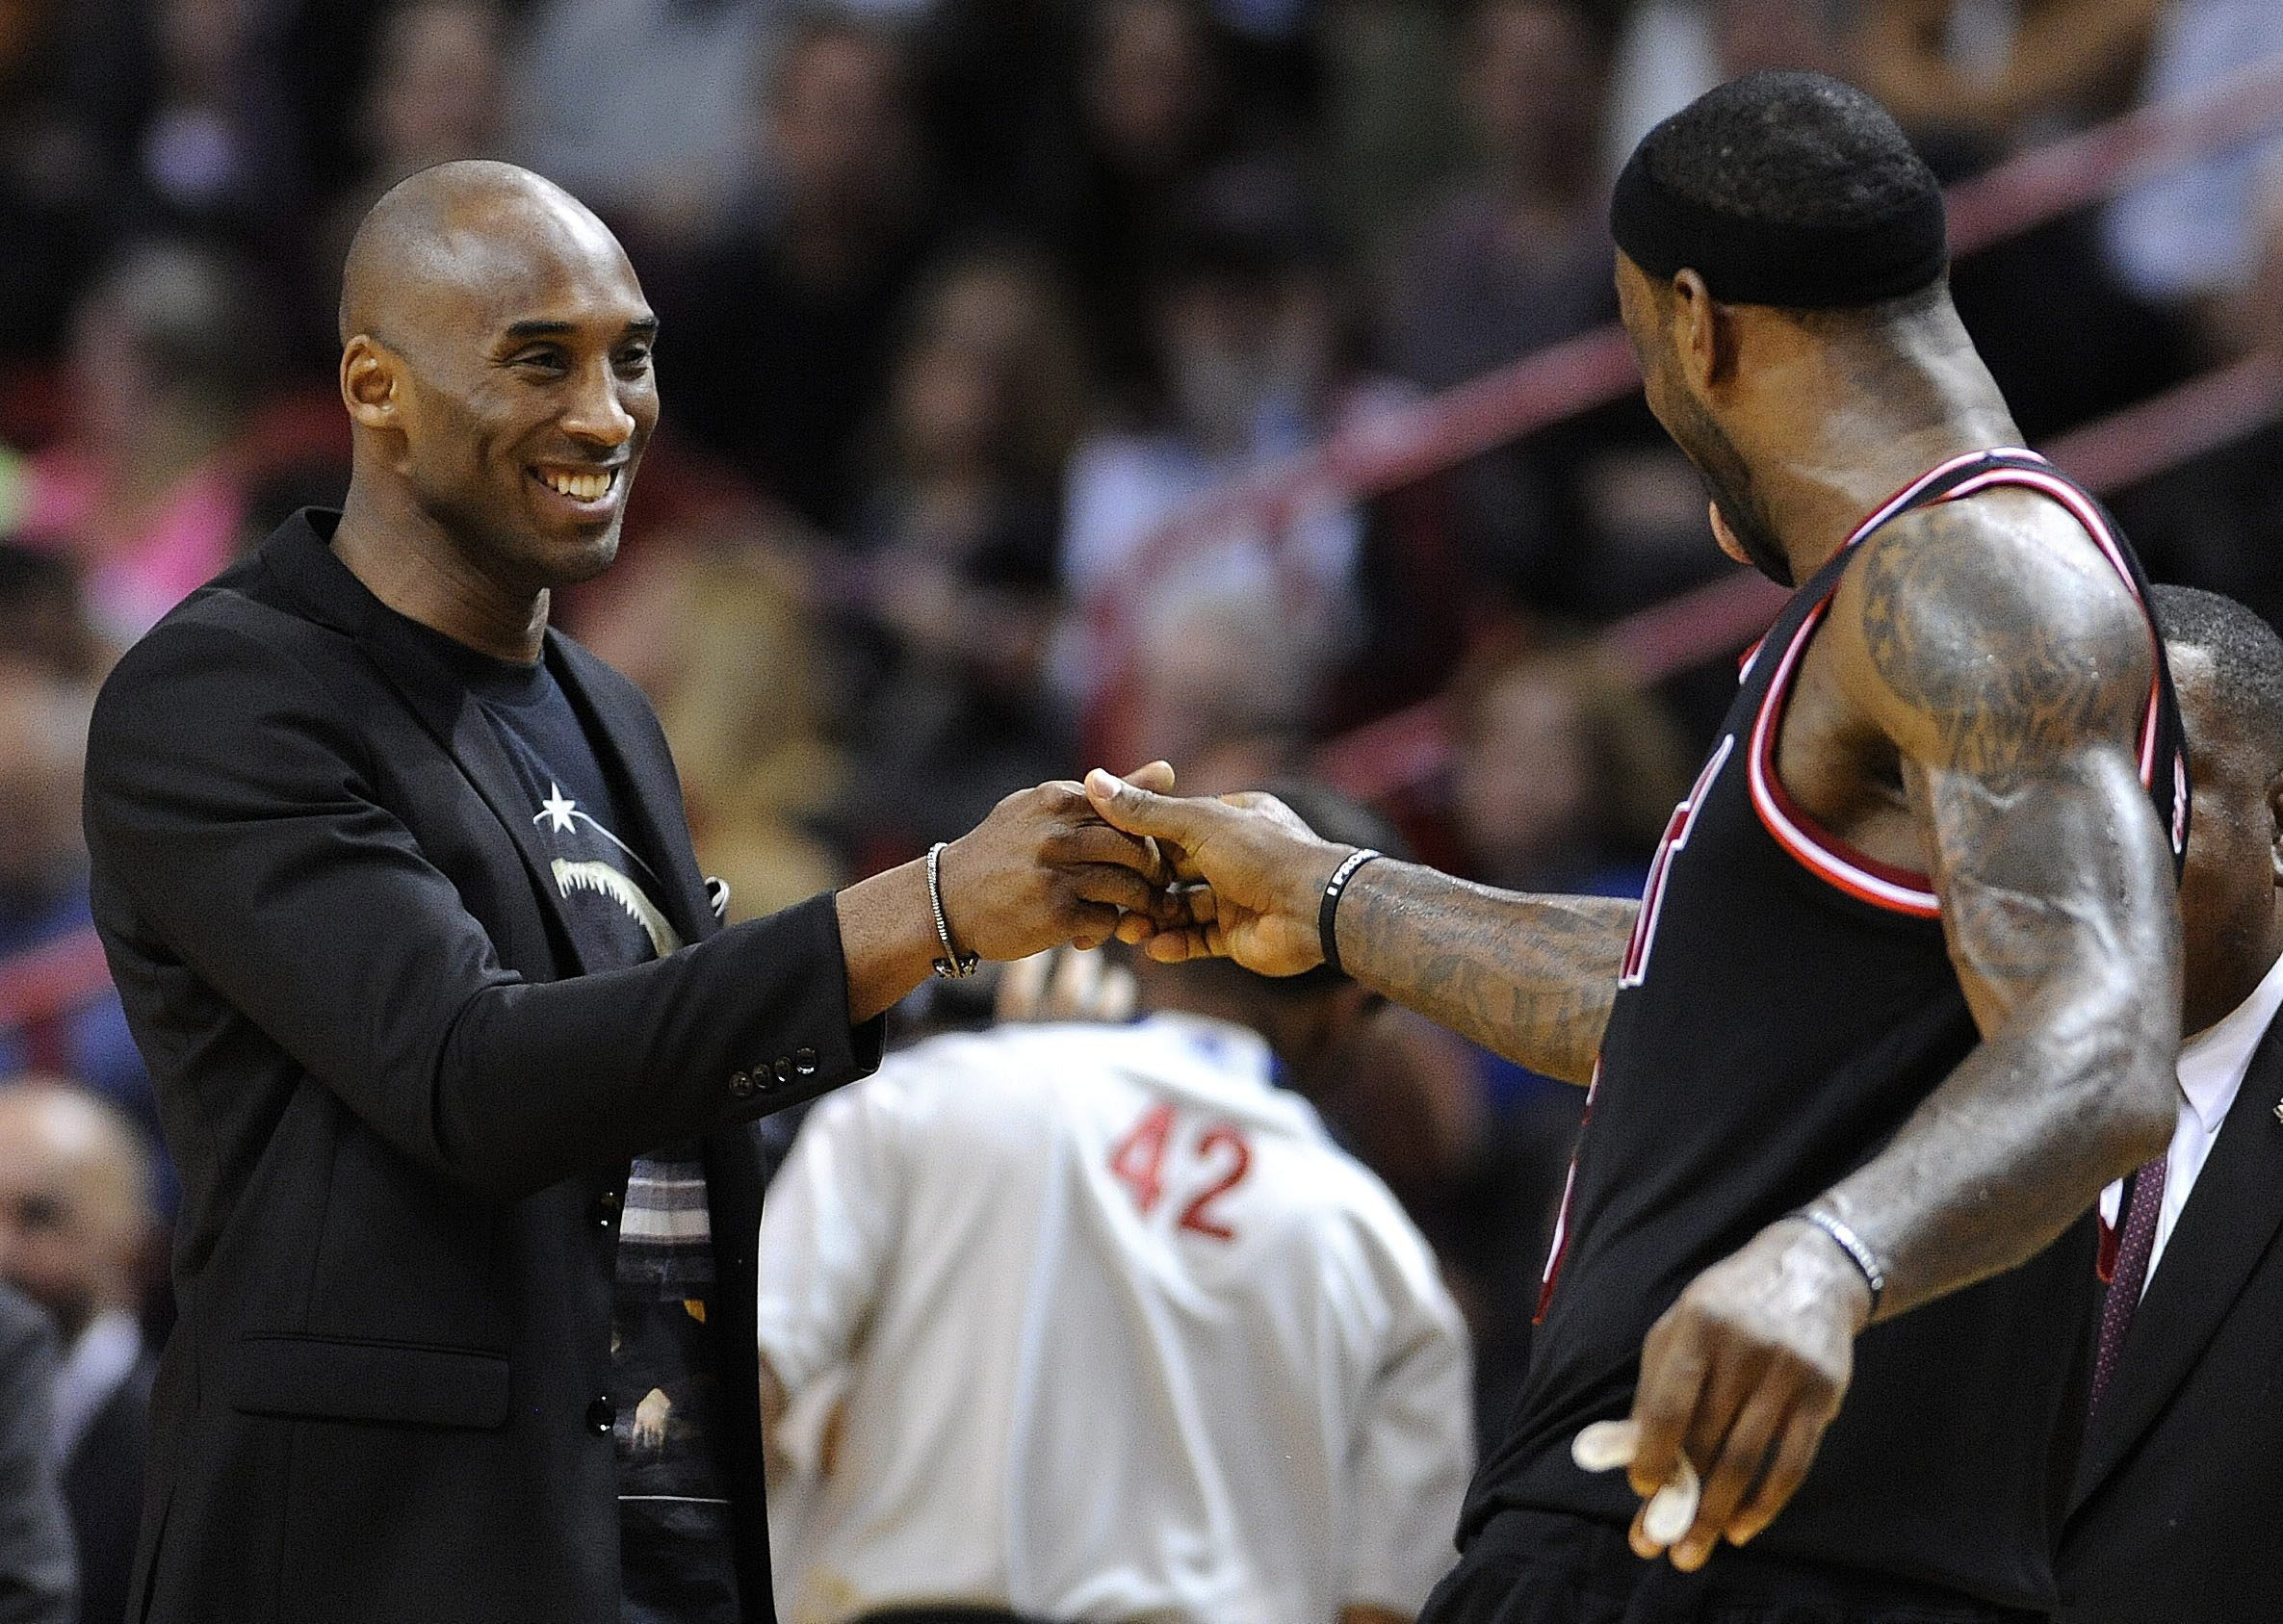 Lebron, Kobe y hasta Obama critican la actitud racista del dueño de los Clippers